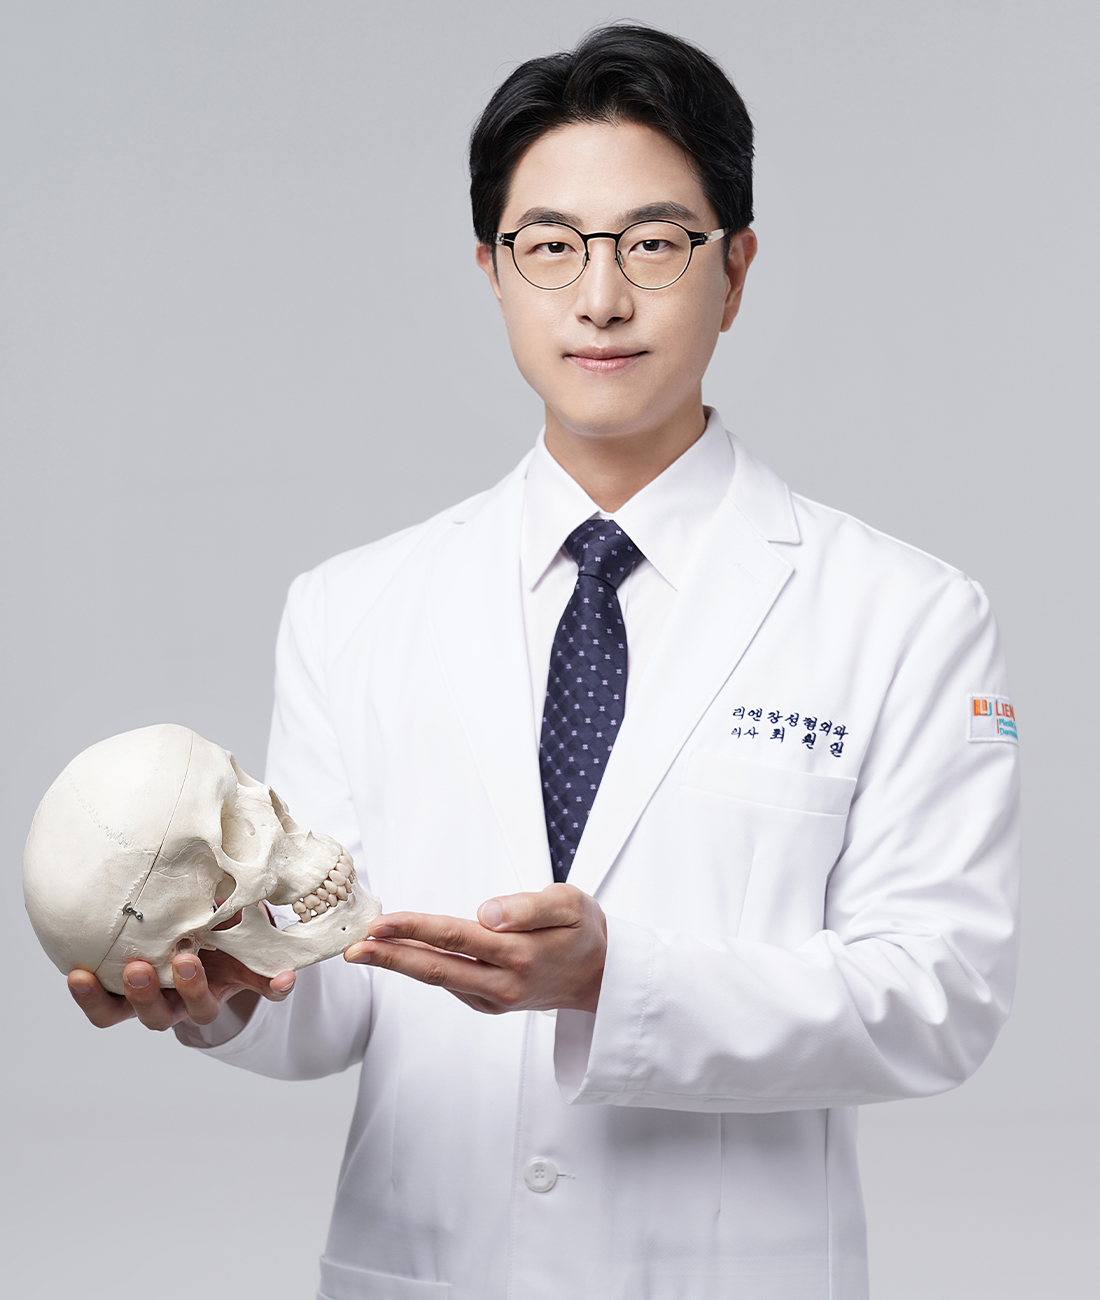 lienjang-doctor-plastic-surgeon